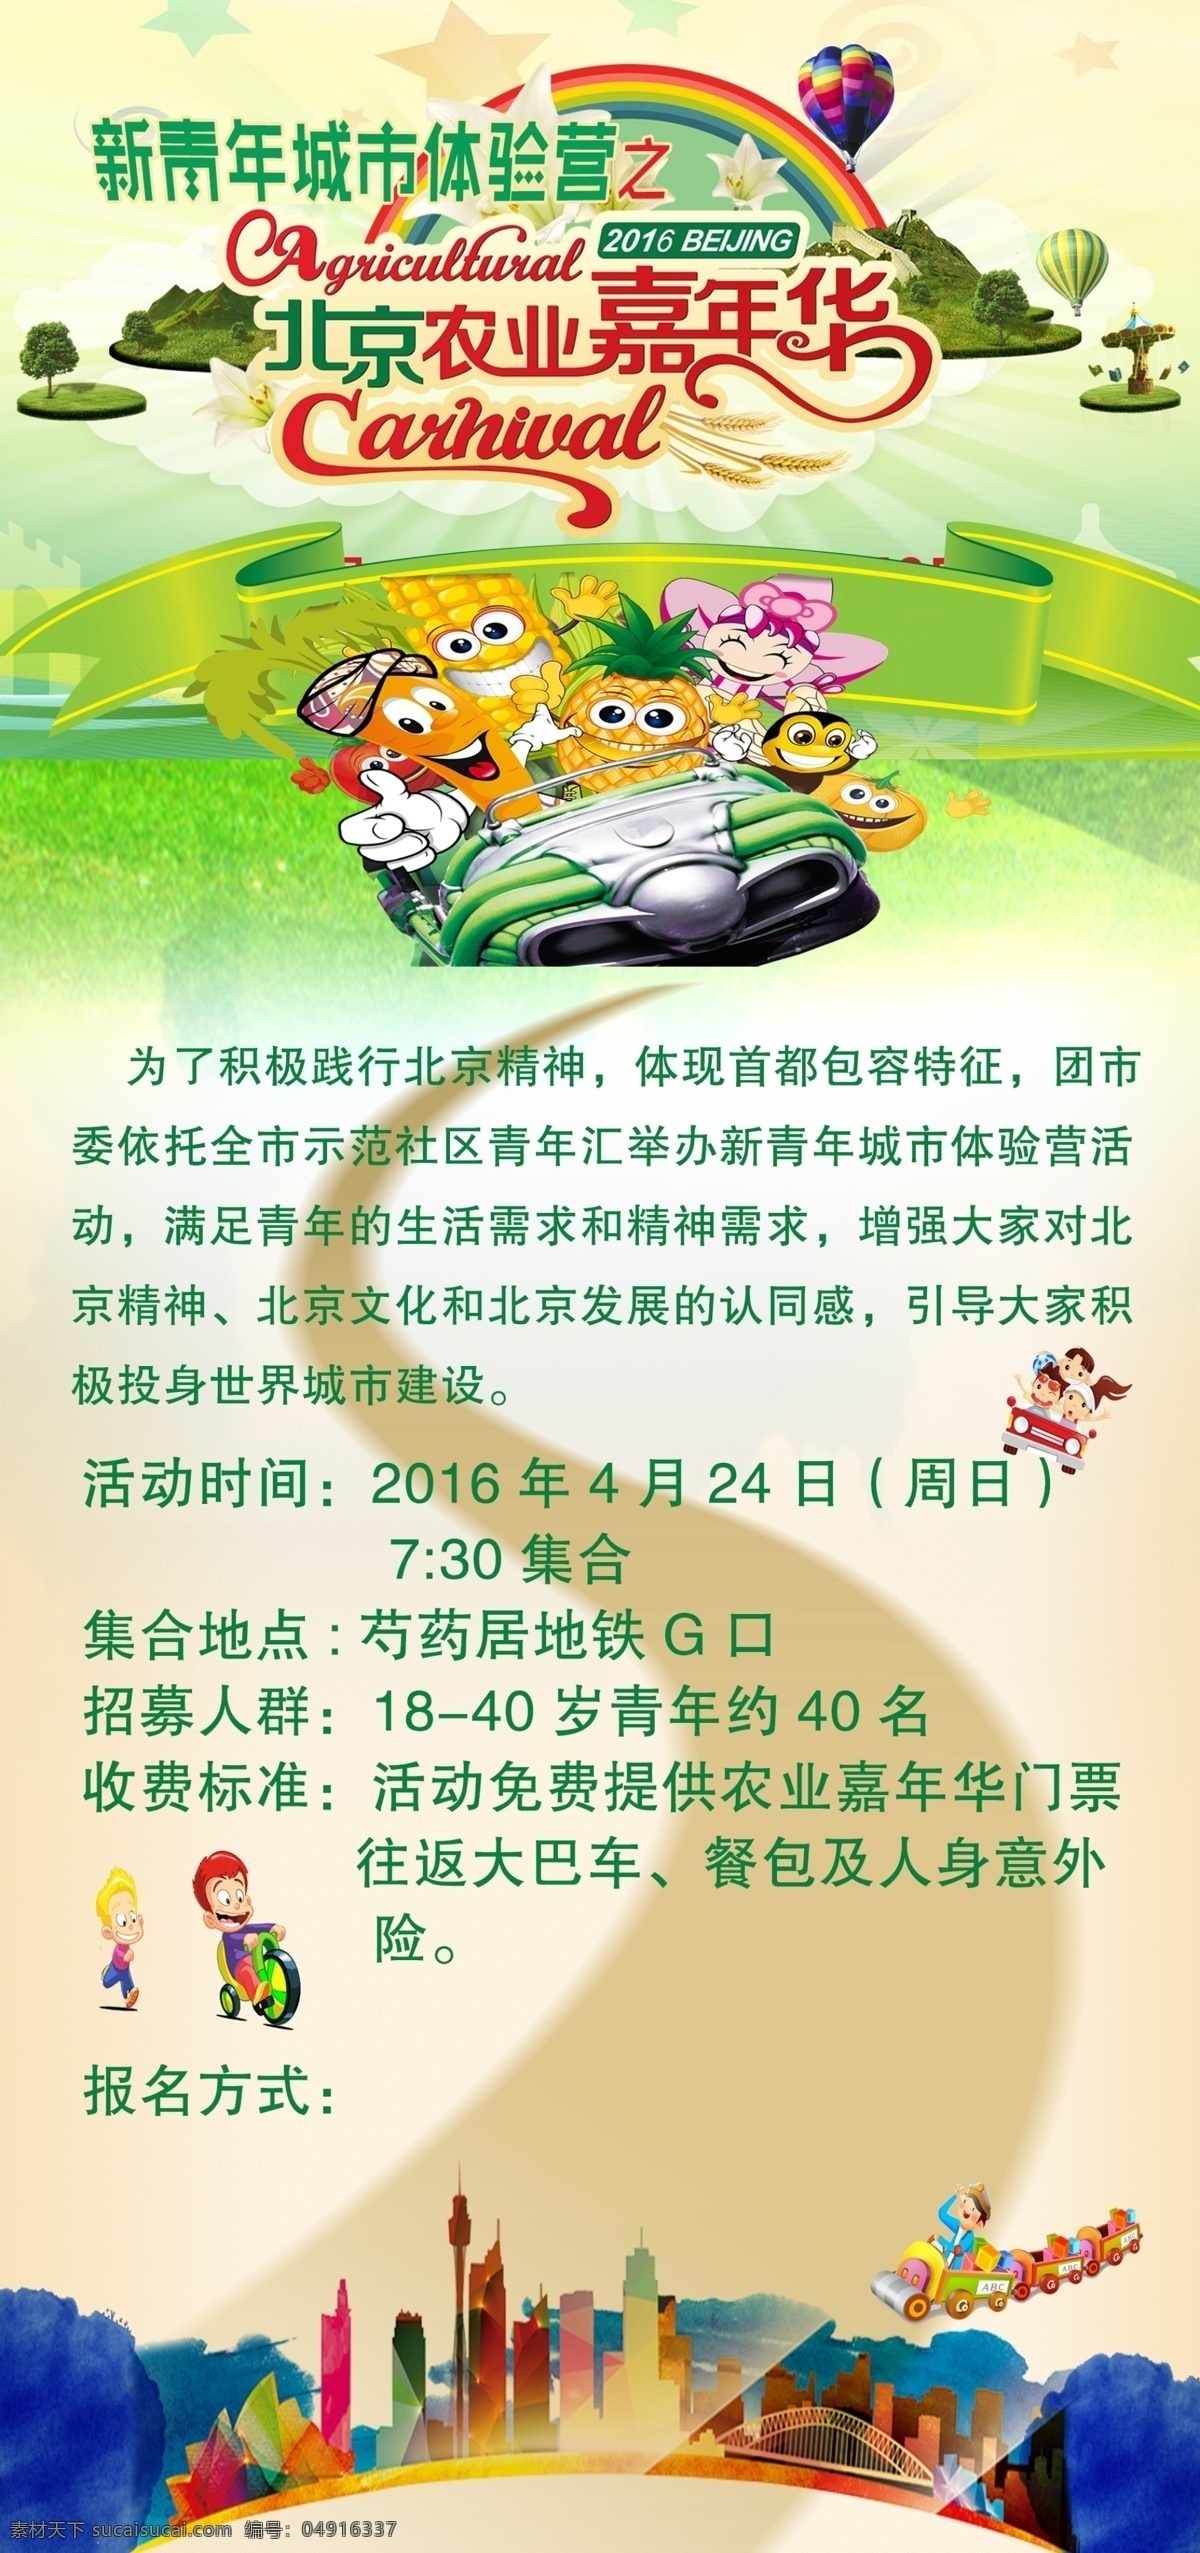 北京 农业 嘉年华 宣传 宣传图 原创 农业嘉年华 新青年 白色